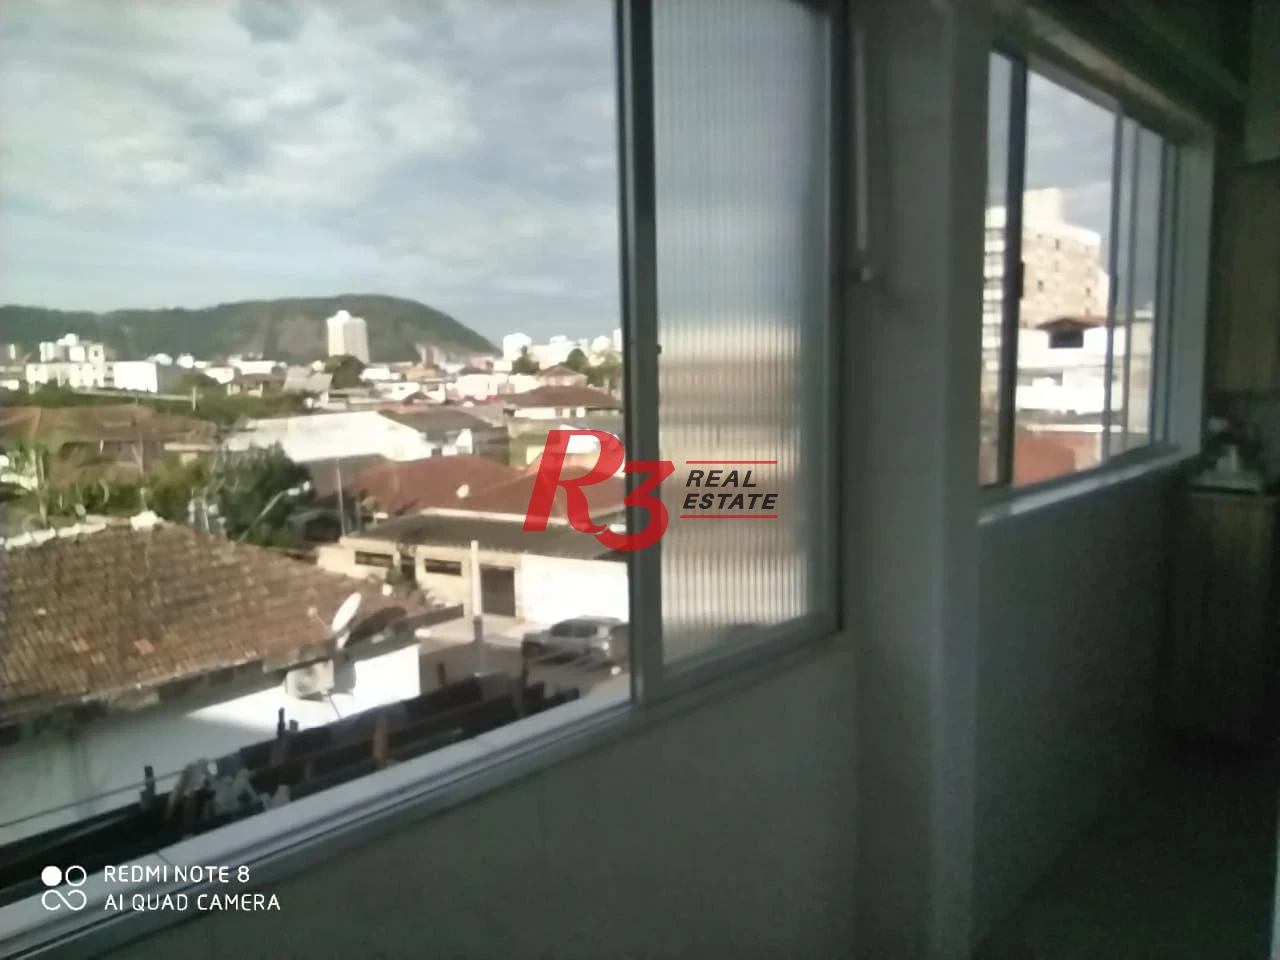 Apartamento com 2 dormitórios à venda, 72 m² - São Vicente/SP